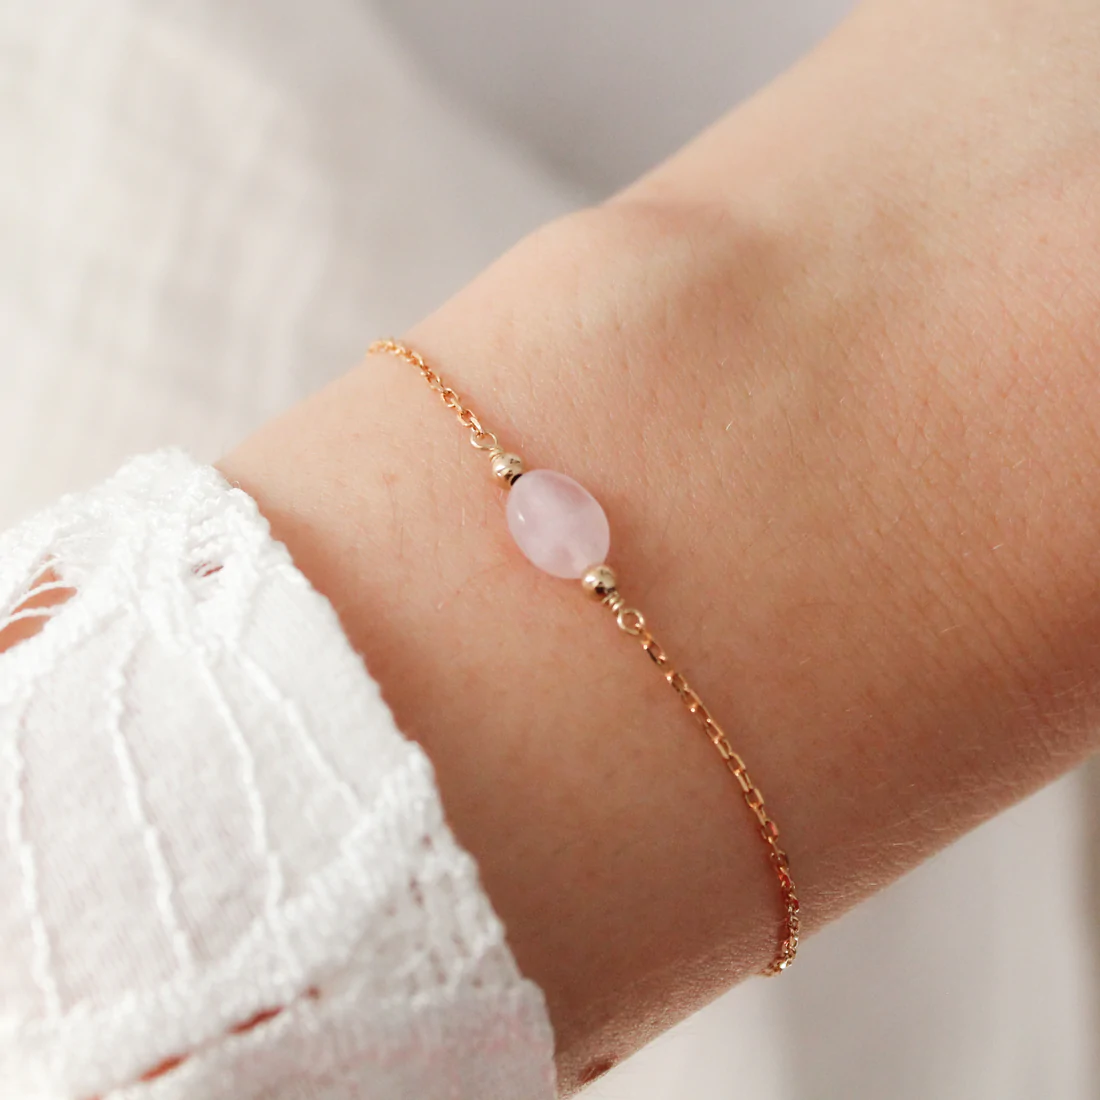 bracelet femme chaine or fin 24 carats pierre quartz rose idee cadeau pour femme bijou de createurs francais eshop leonie et france